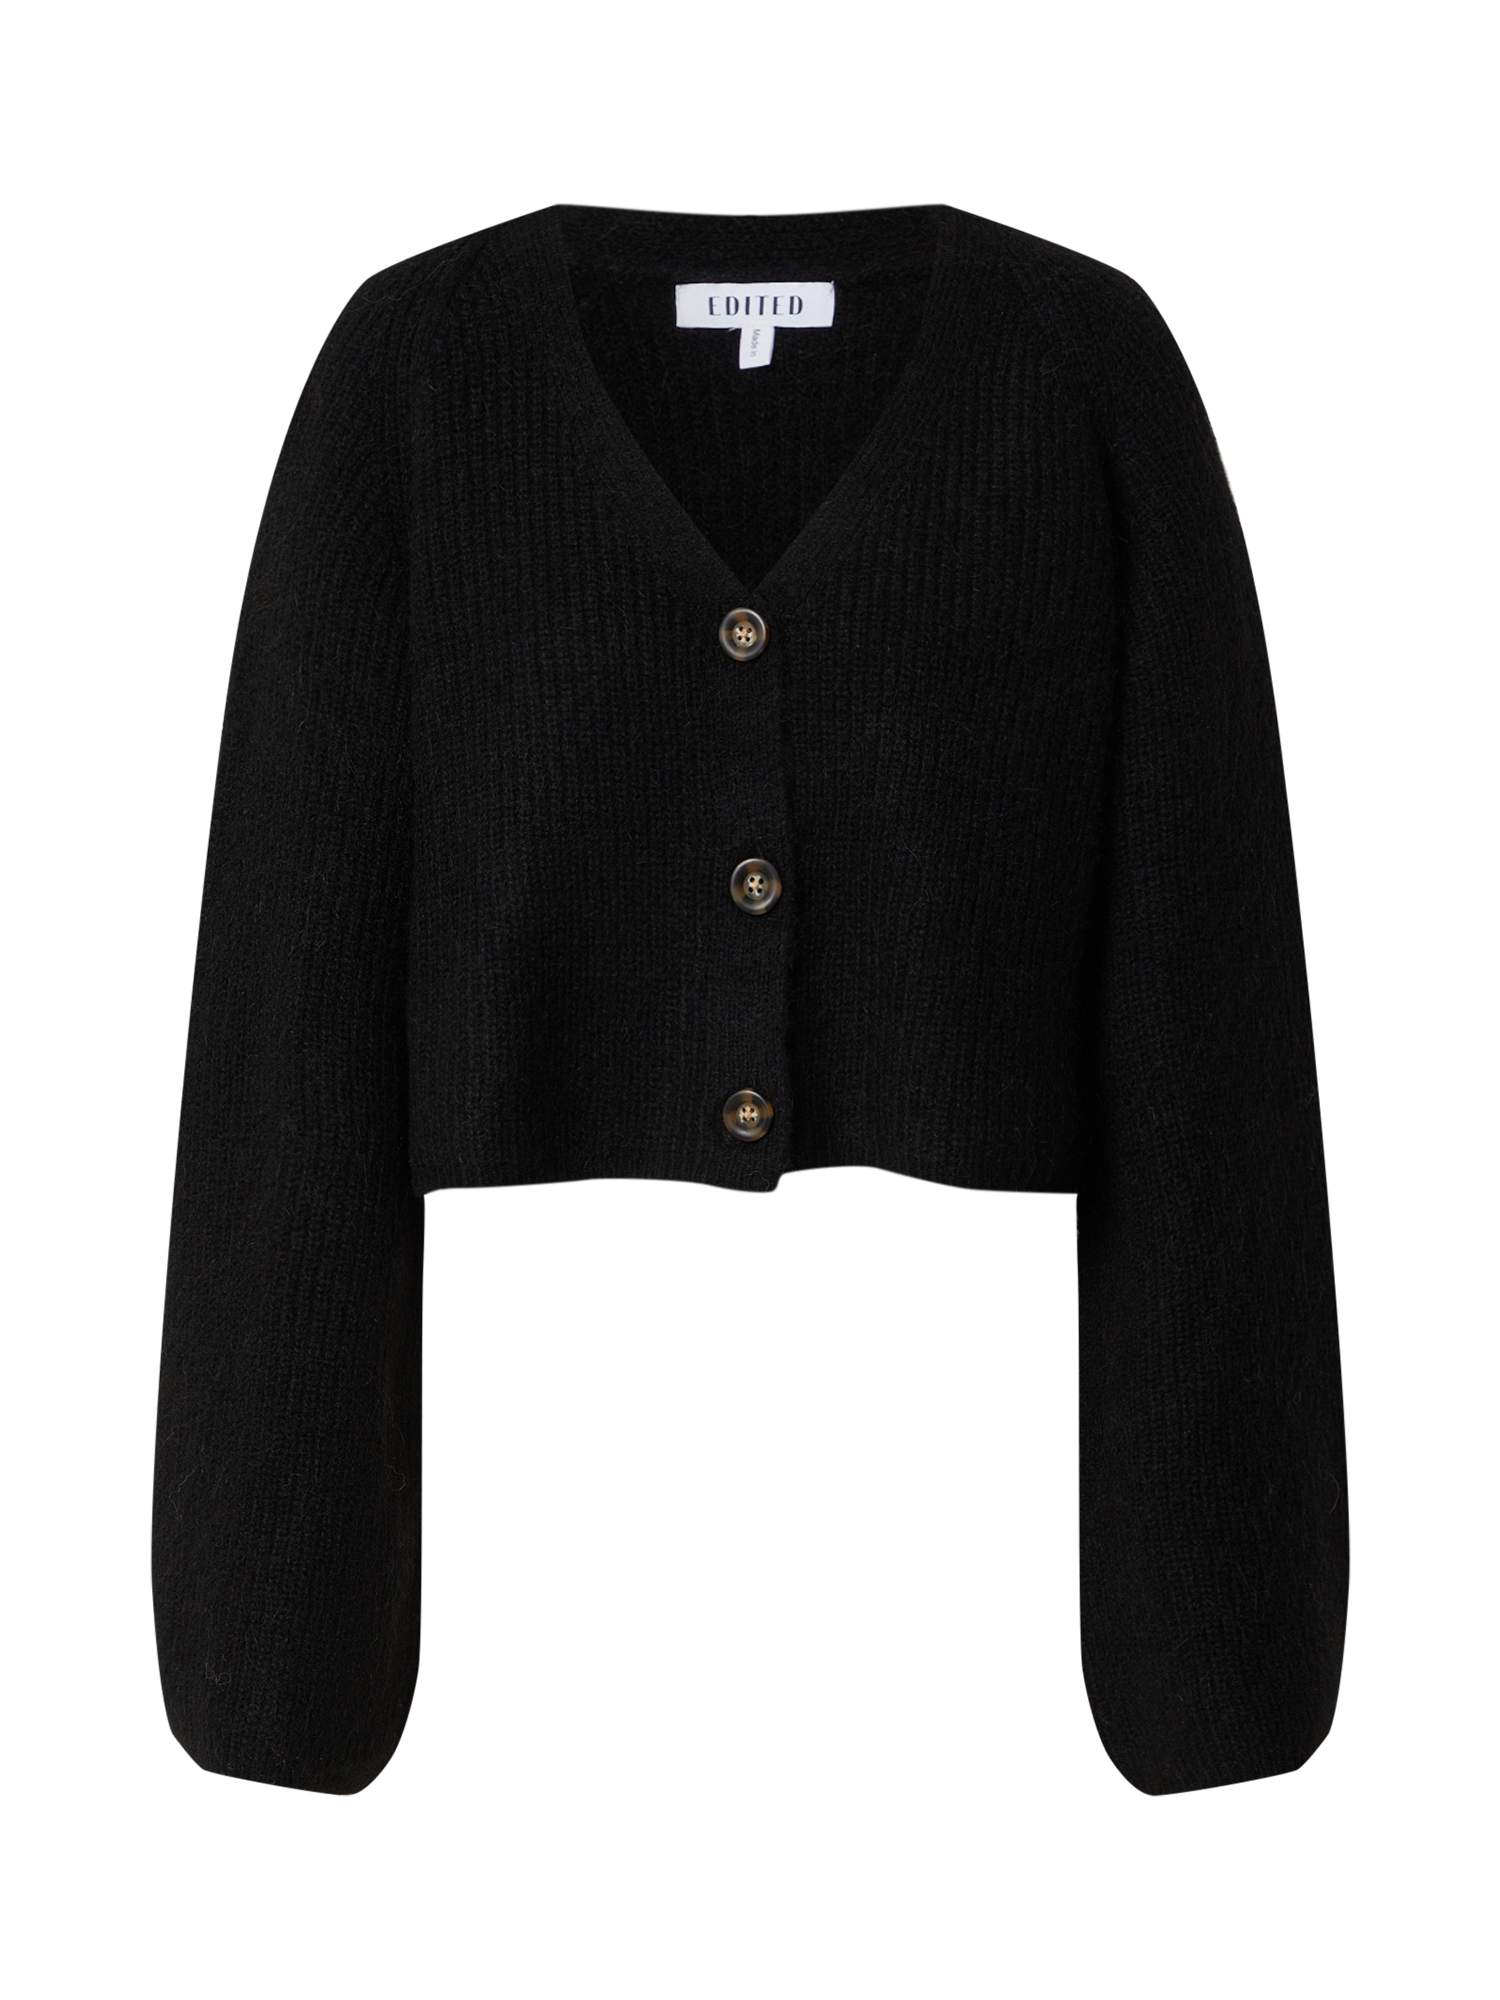 Odzież Swetry & dzianina EDITED Kardigan Vivienne w kolorze Czarnym 